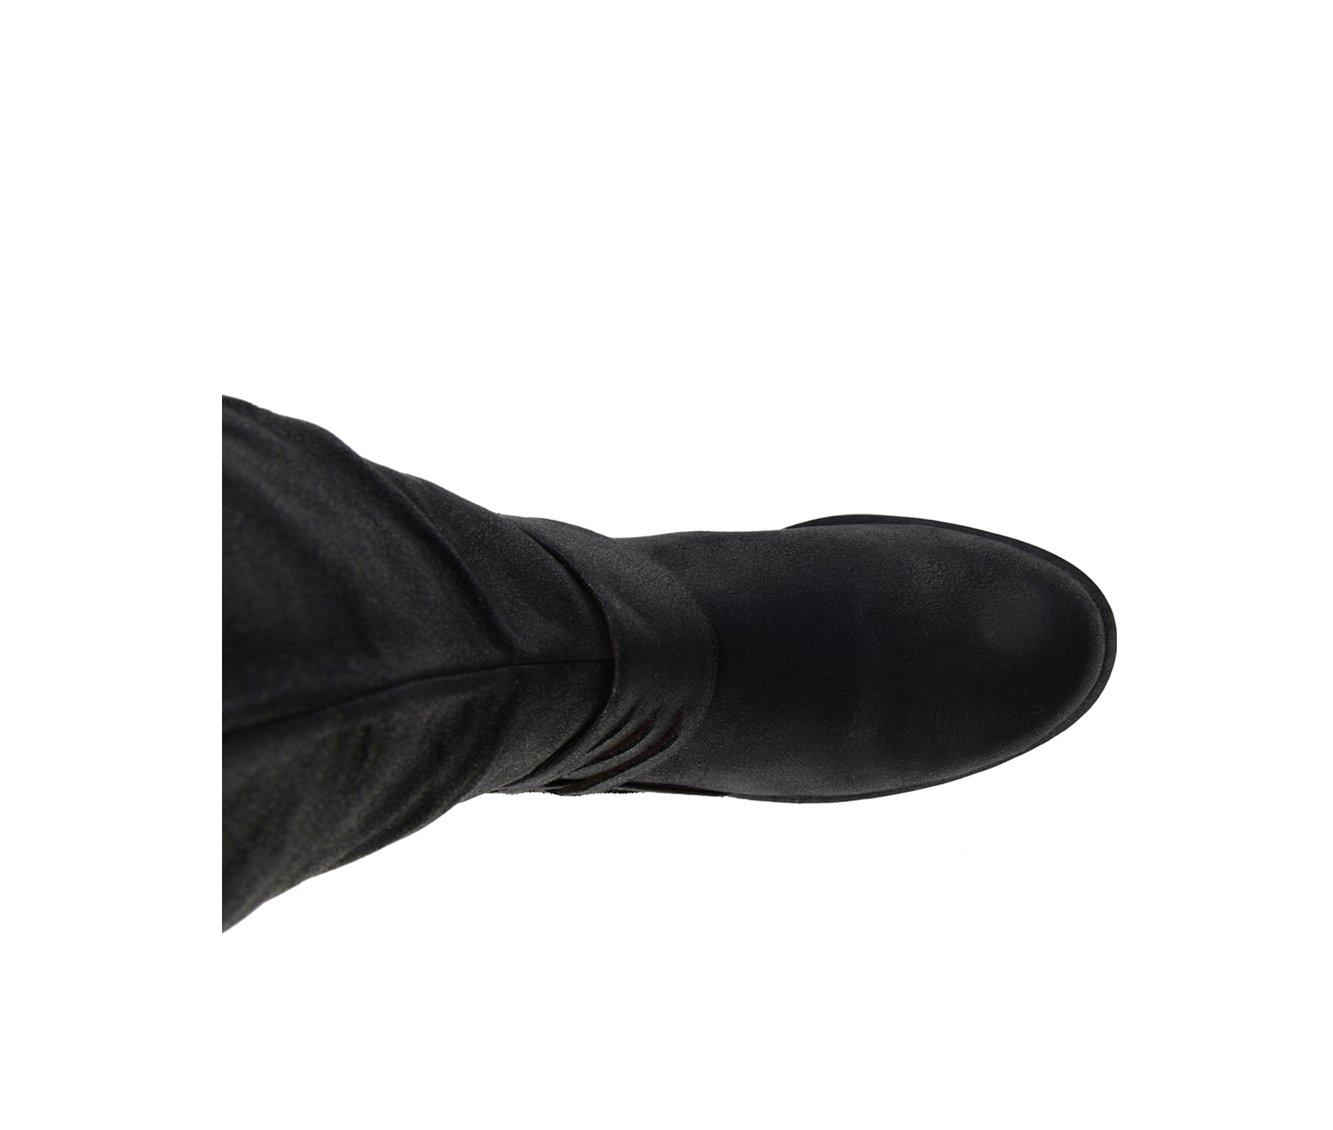 Meg Extra Wide Calf Boots, Women's Knee High Boots